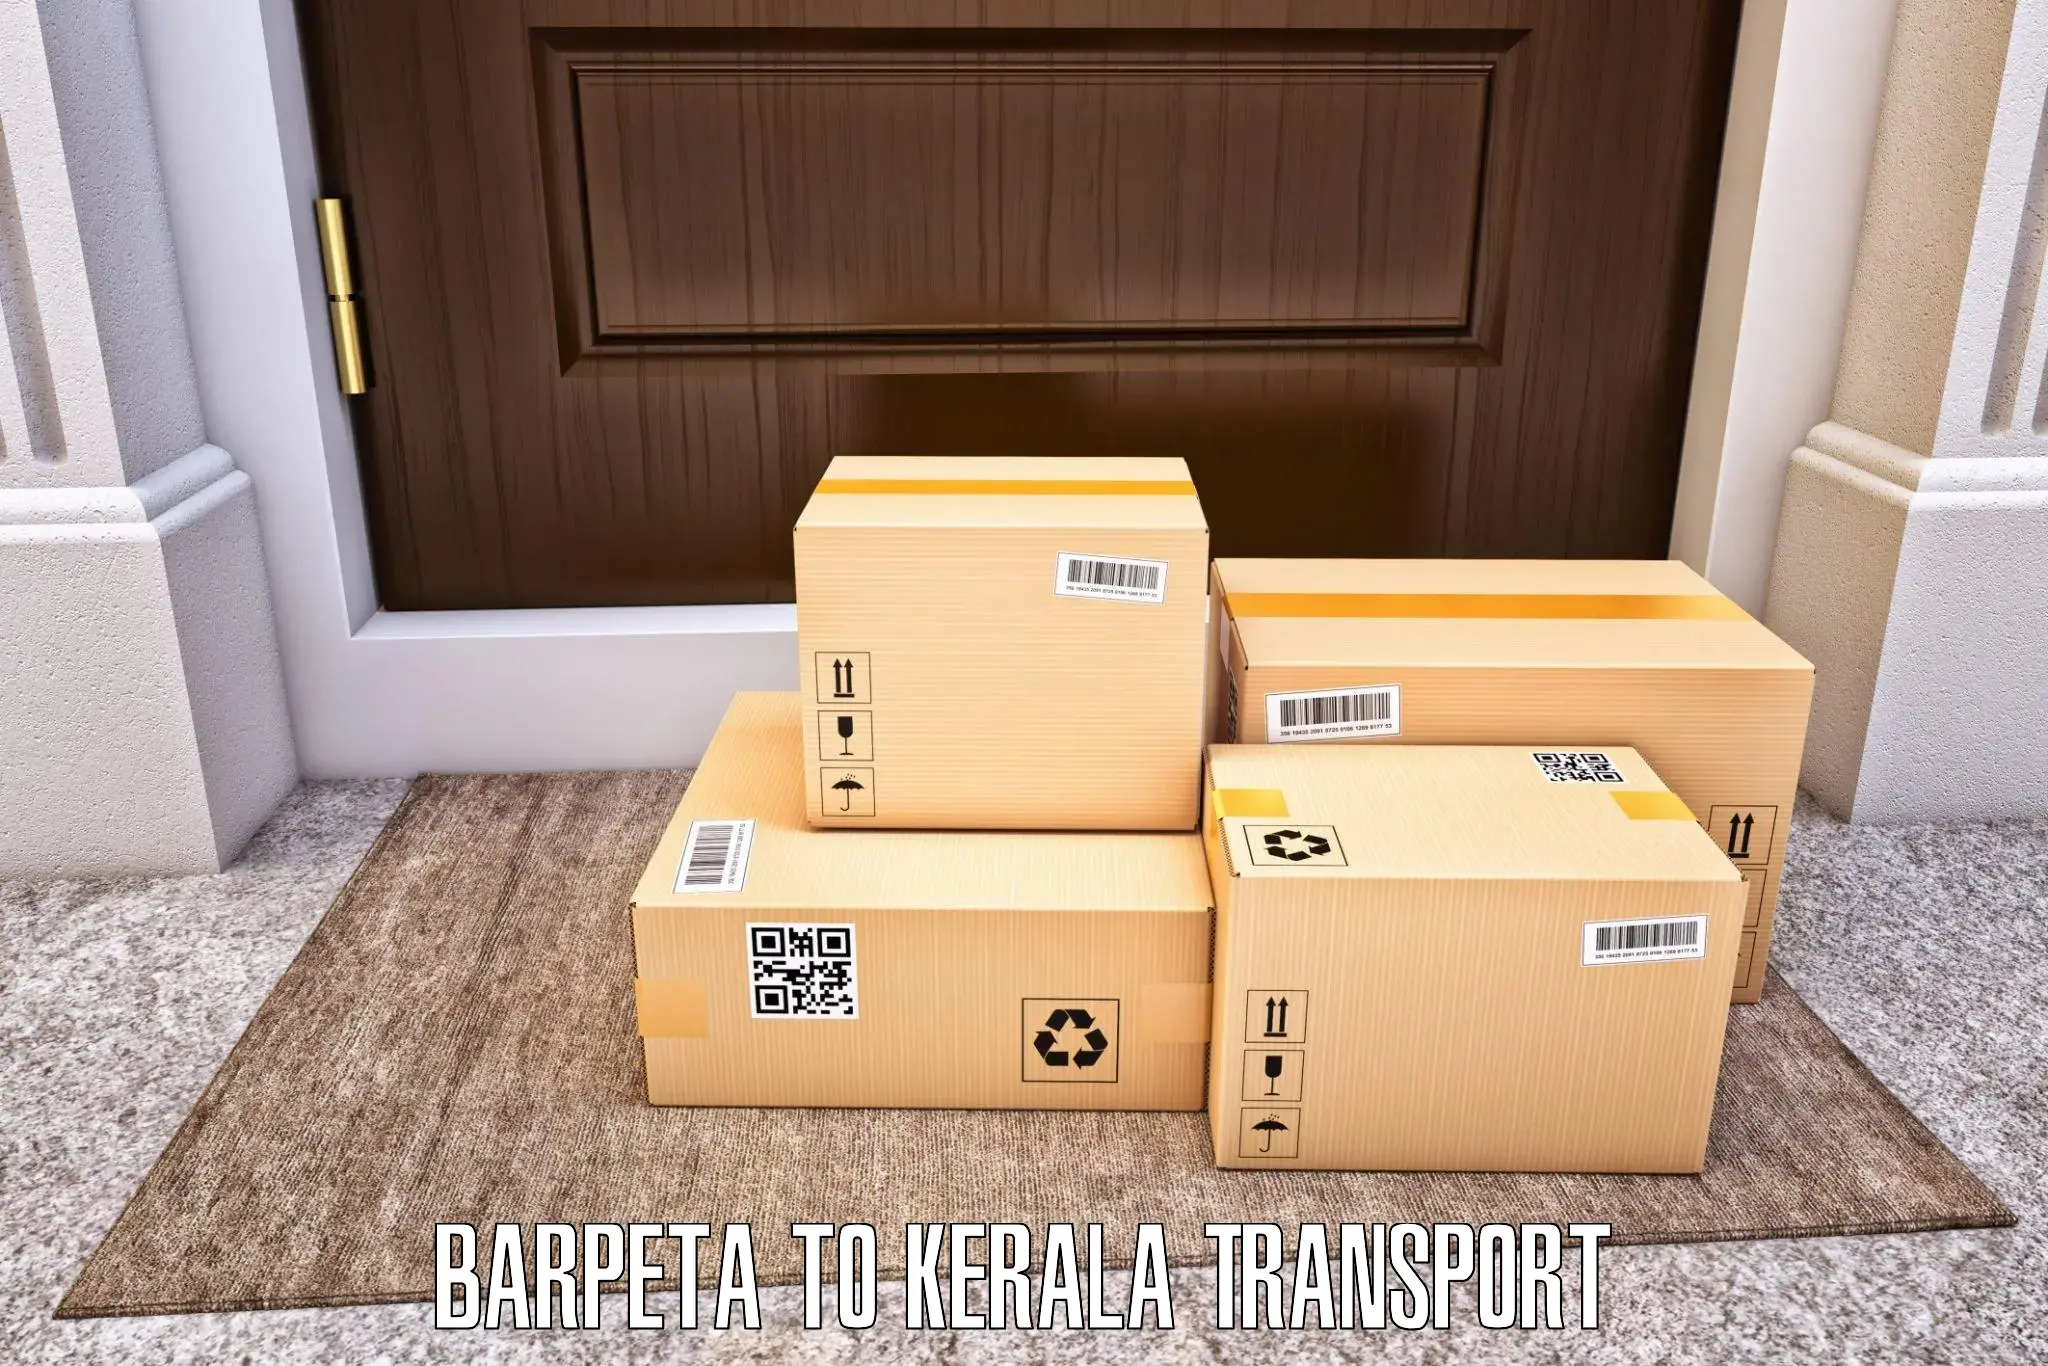 Shipping services Barpeta to Parappa